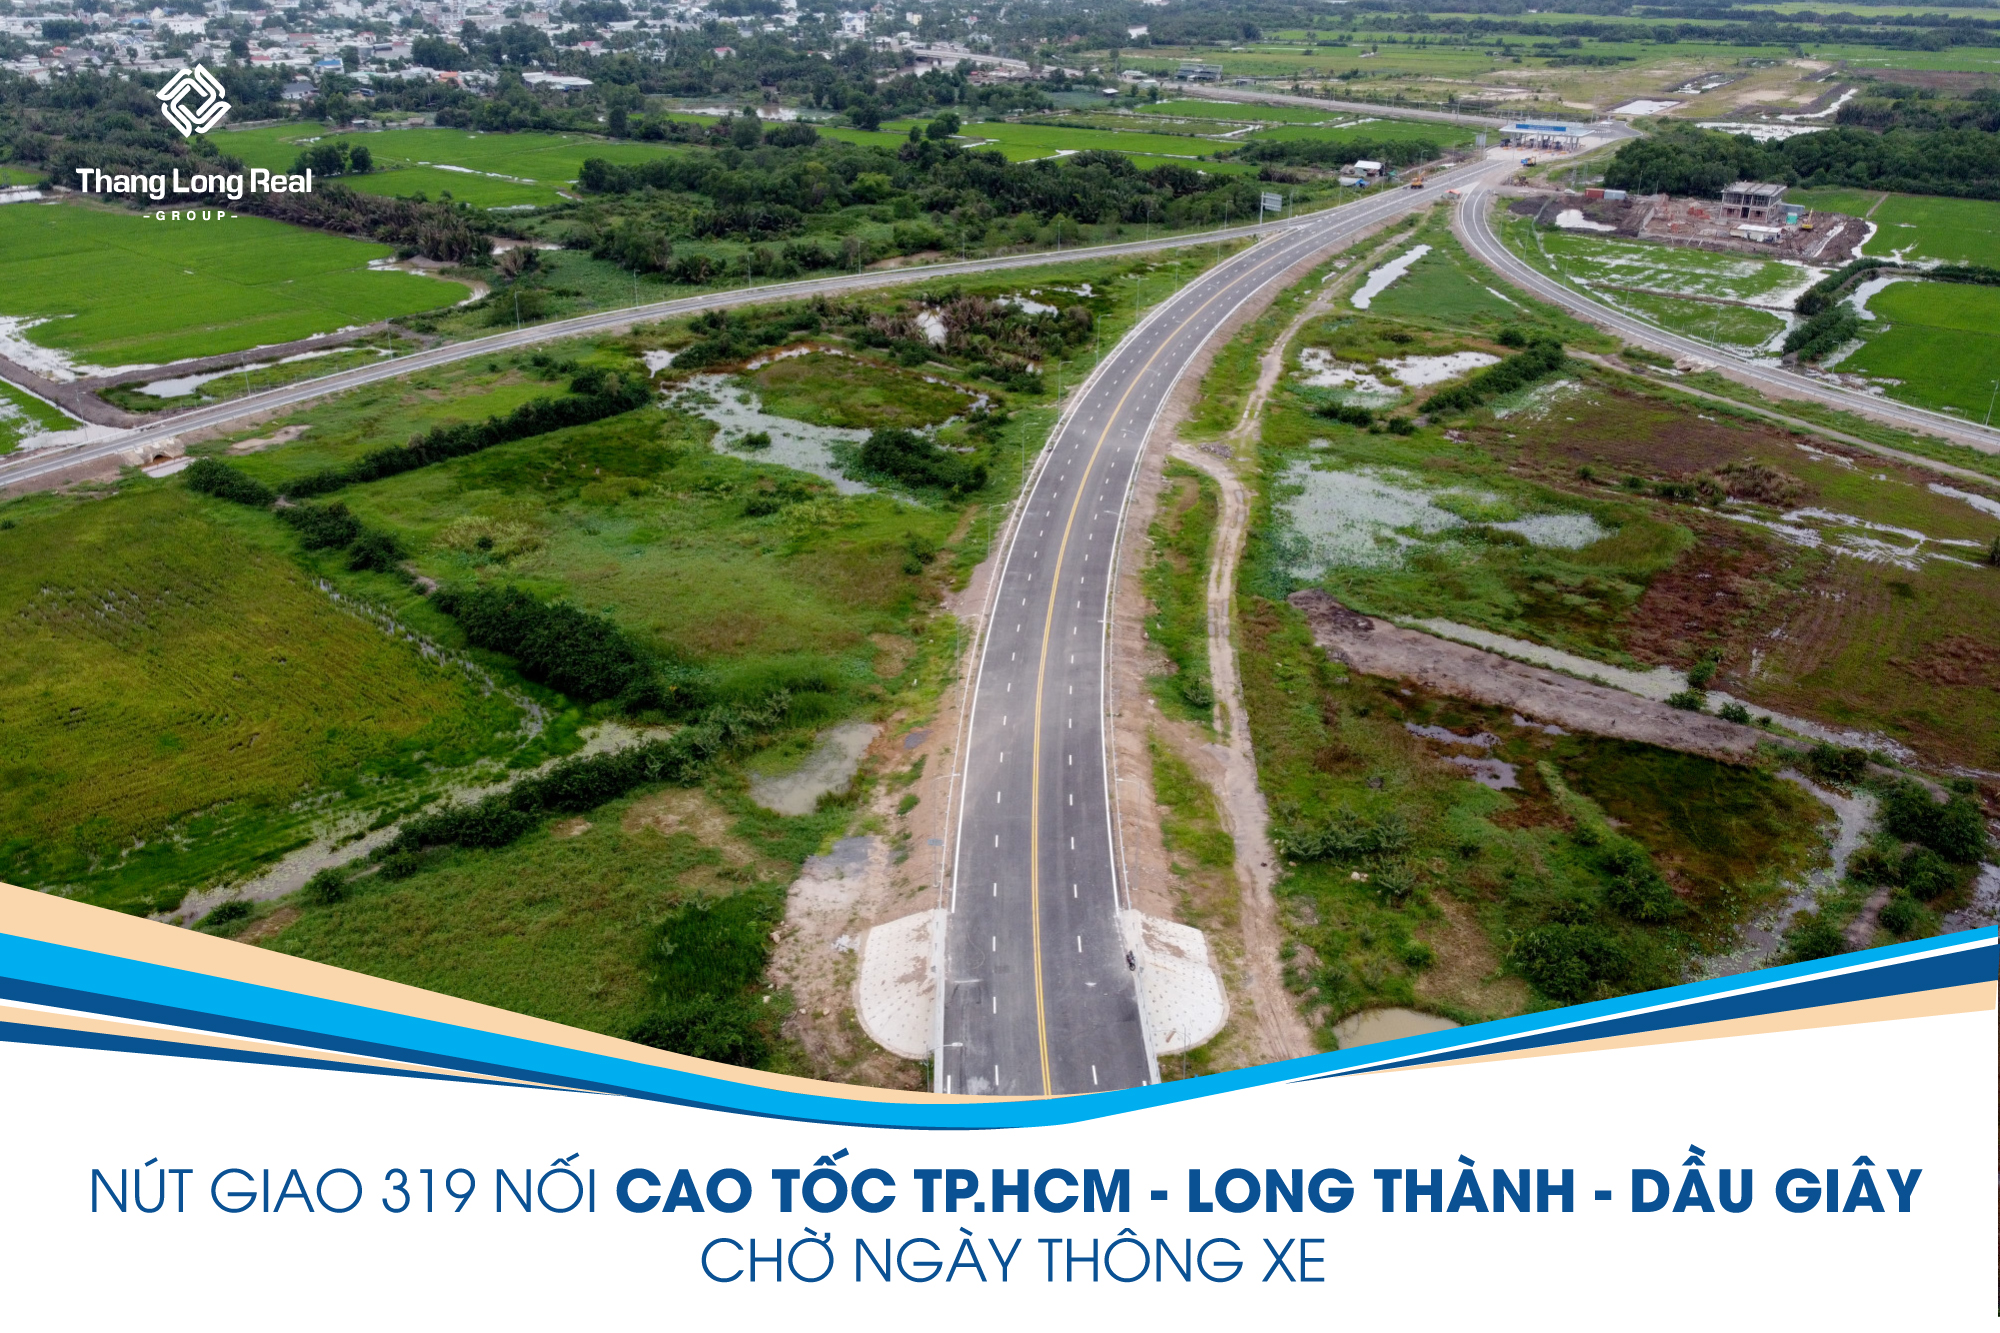 Nút giao 319 nối cao tốc tp HCM - Long Thành - Dầu Giây chờ ngày thông xe